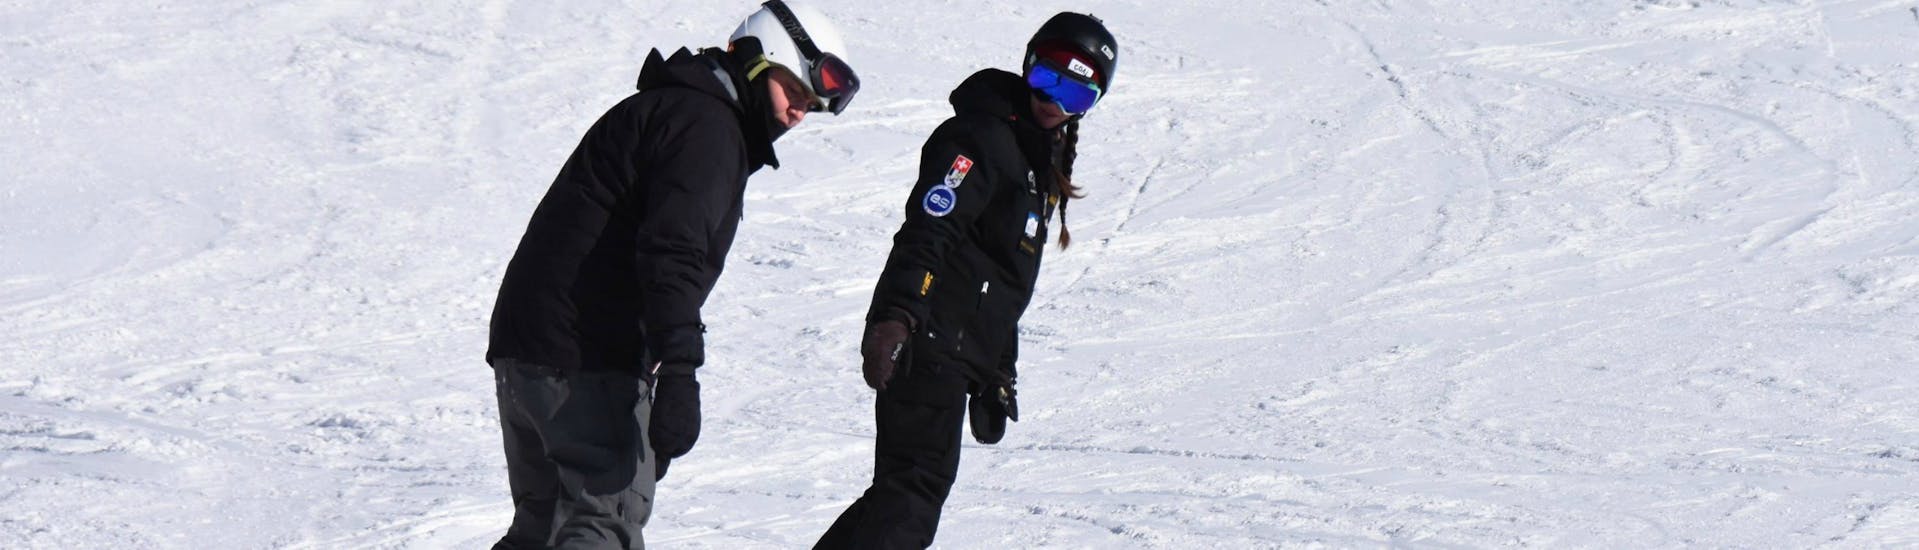 Istruttore di Snowboard Privato - Tutti i Livelli e Età con Ski Cool St. Moritz.